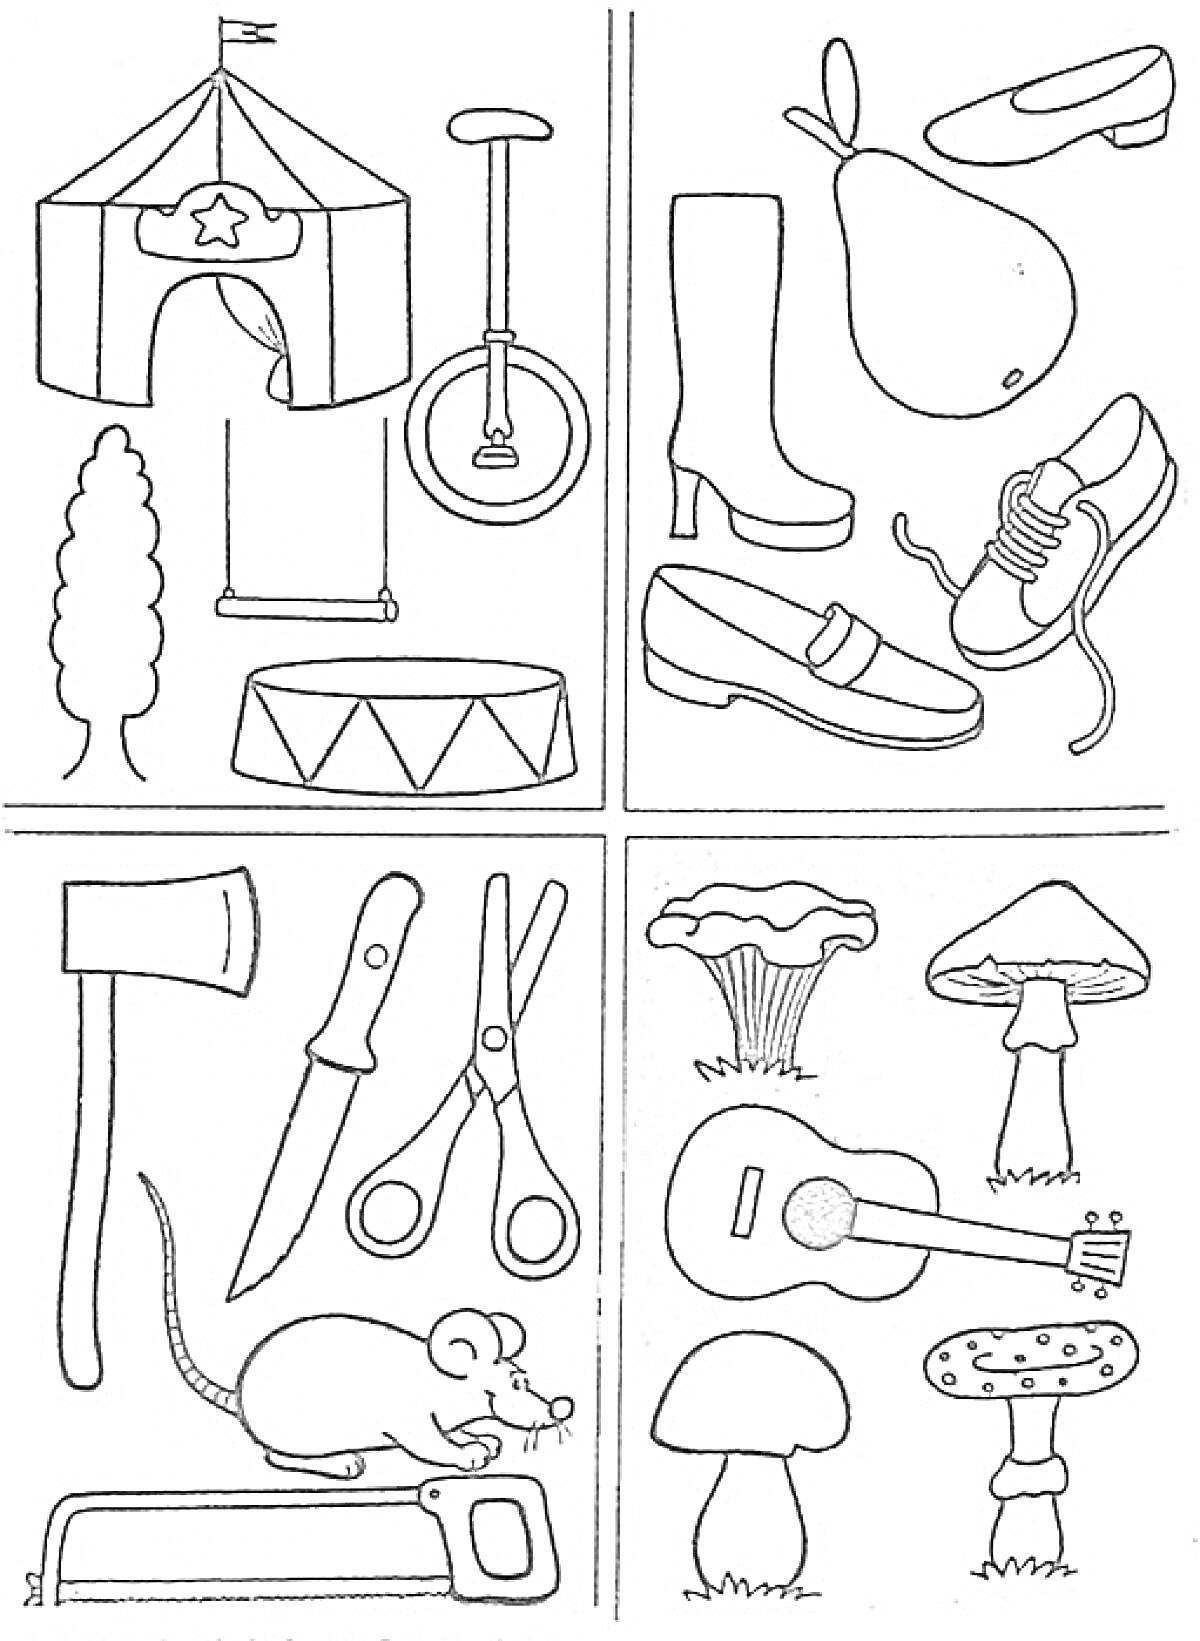 Раскраска Цирк, обувь и фрукты, инструменты, грибы и музыкальные инструменты